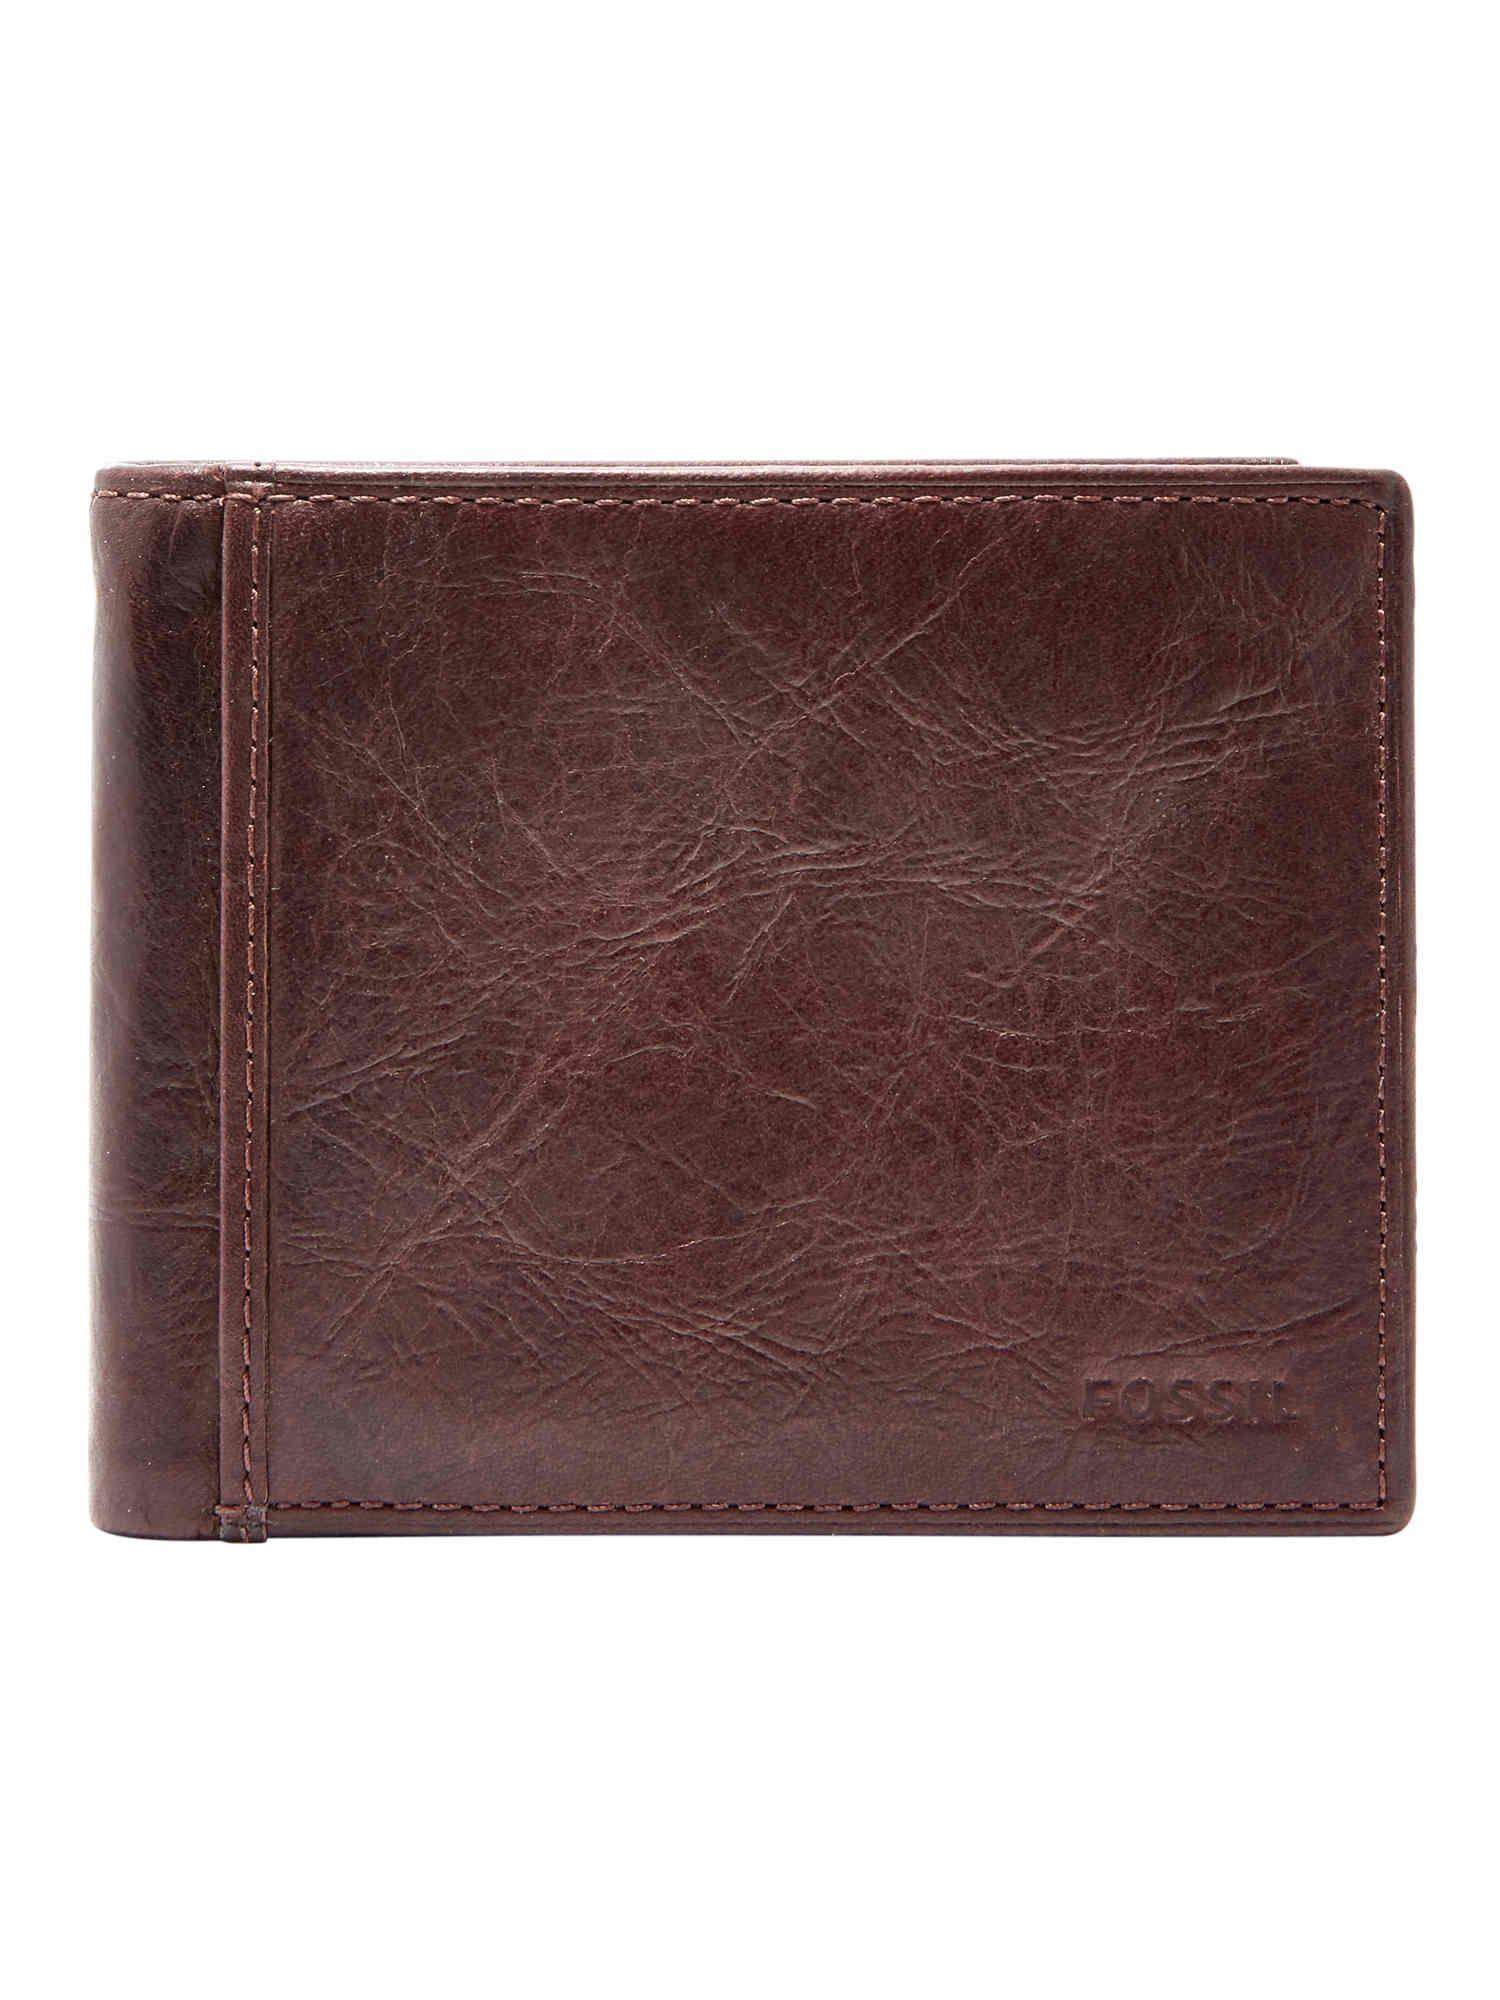 ingram brown wallet ml3784200